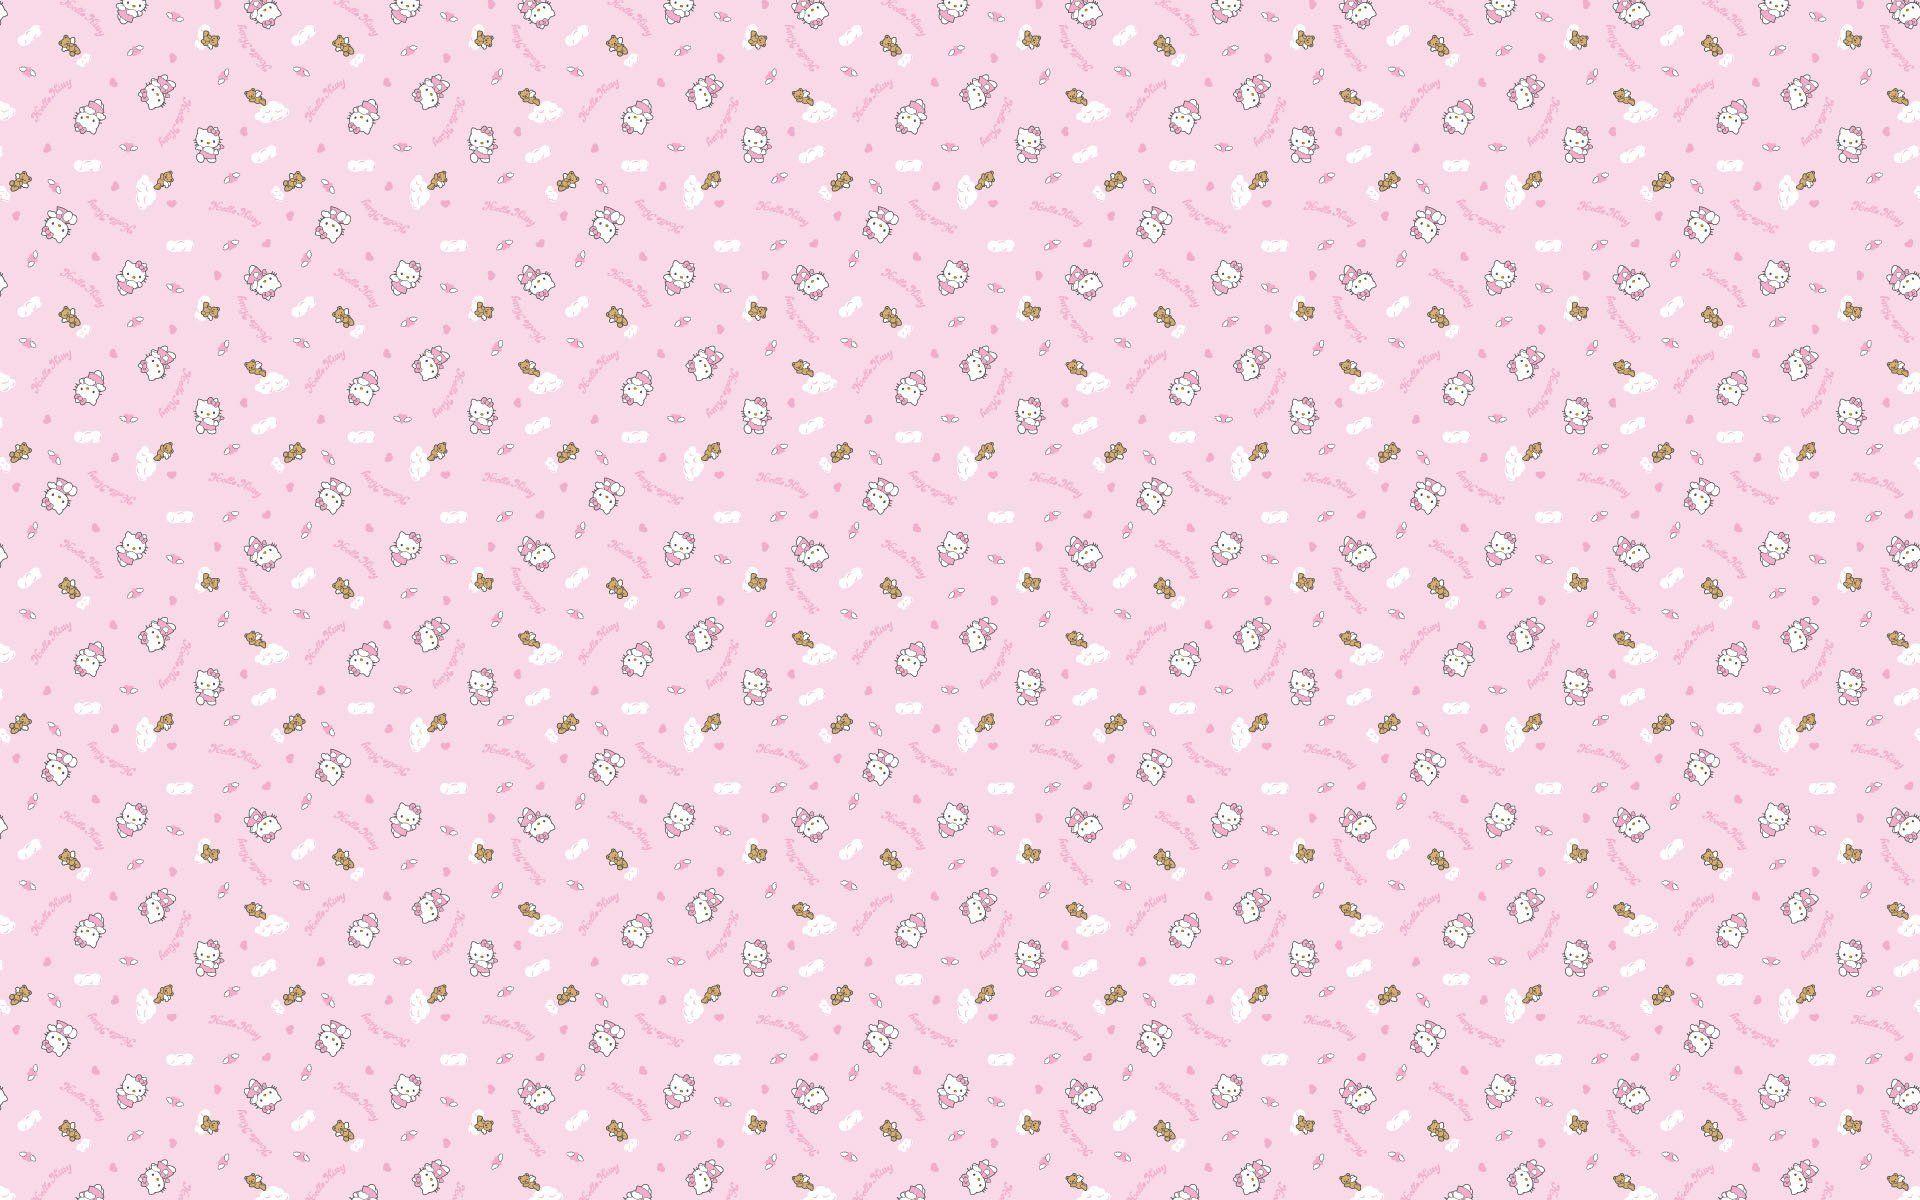 Pink Kitten Wallpaper